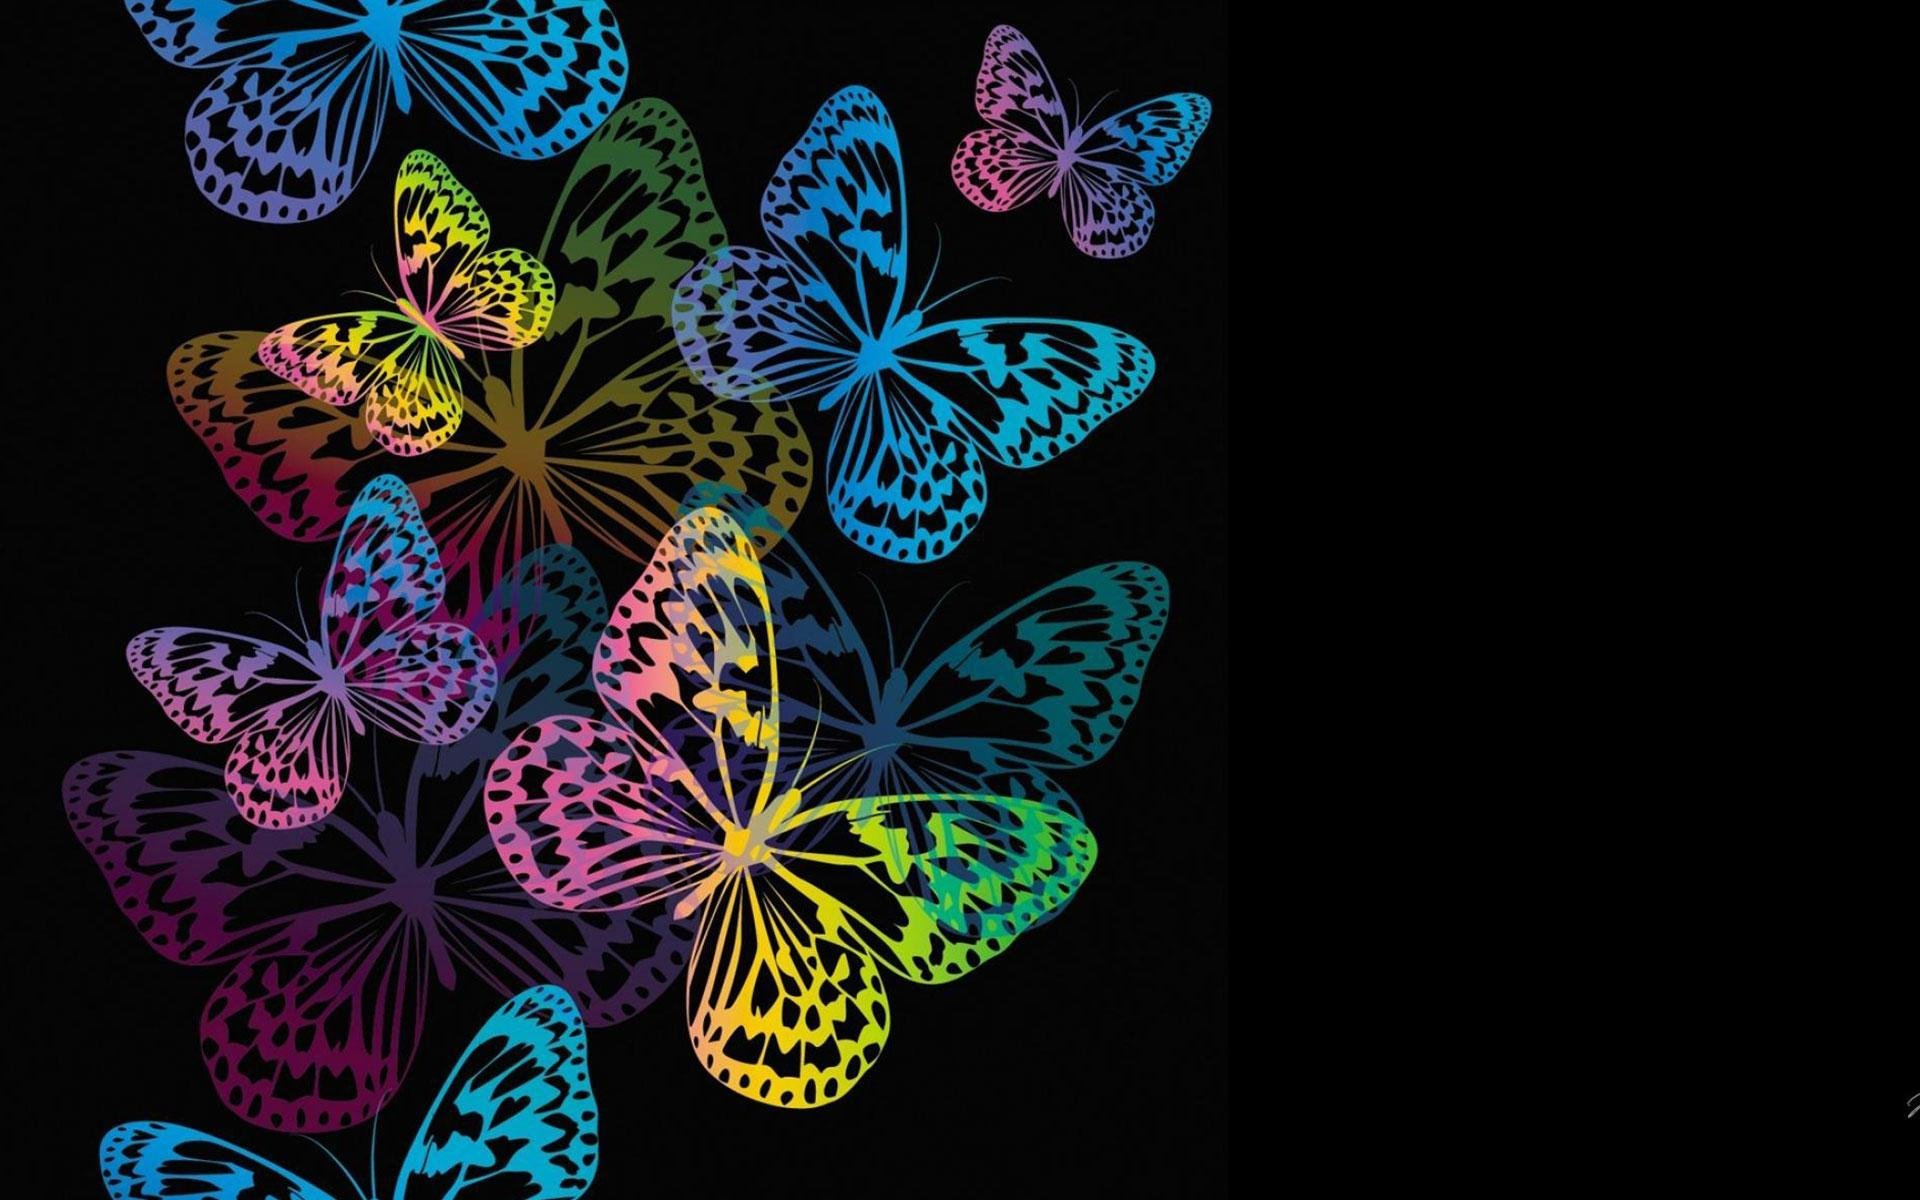 Рисунки на фон телефона. Бабочки на черном фоне. Красивый фон с бабочками. Яркие цветы на черном фоне. Заставка бабочки.